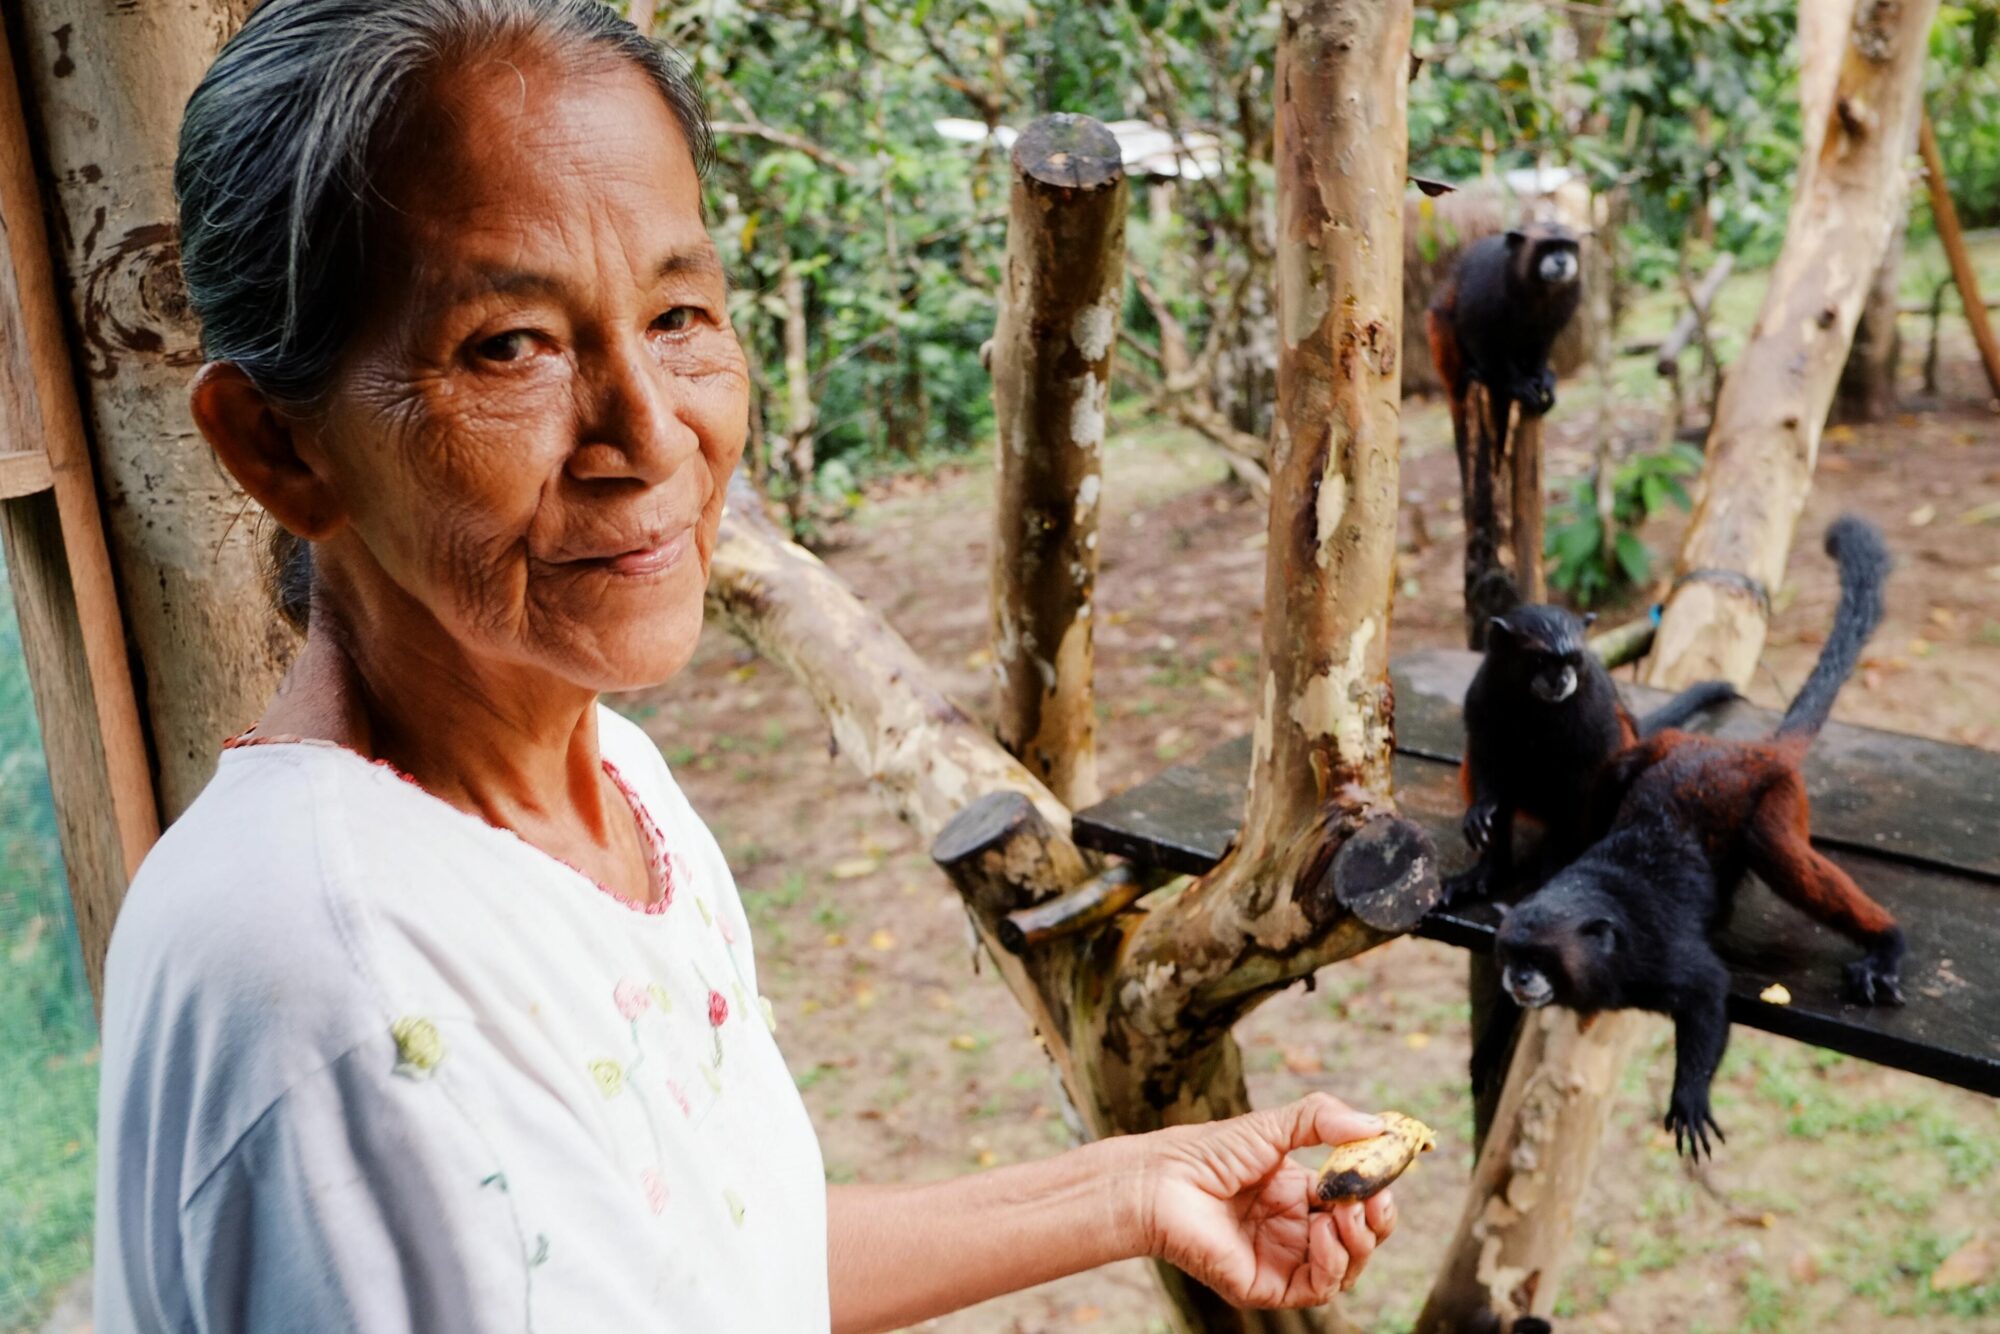 Una integrante de la tribu indígena ticuna en la Amazonía colombiana alimenta a un mono con plátanos